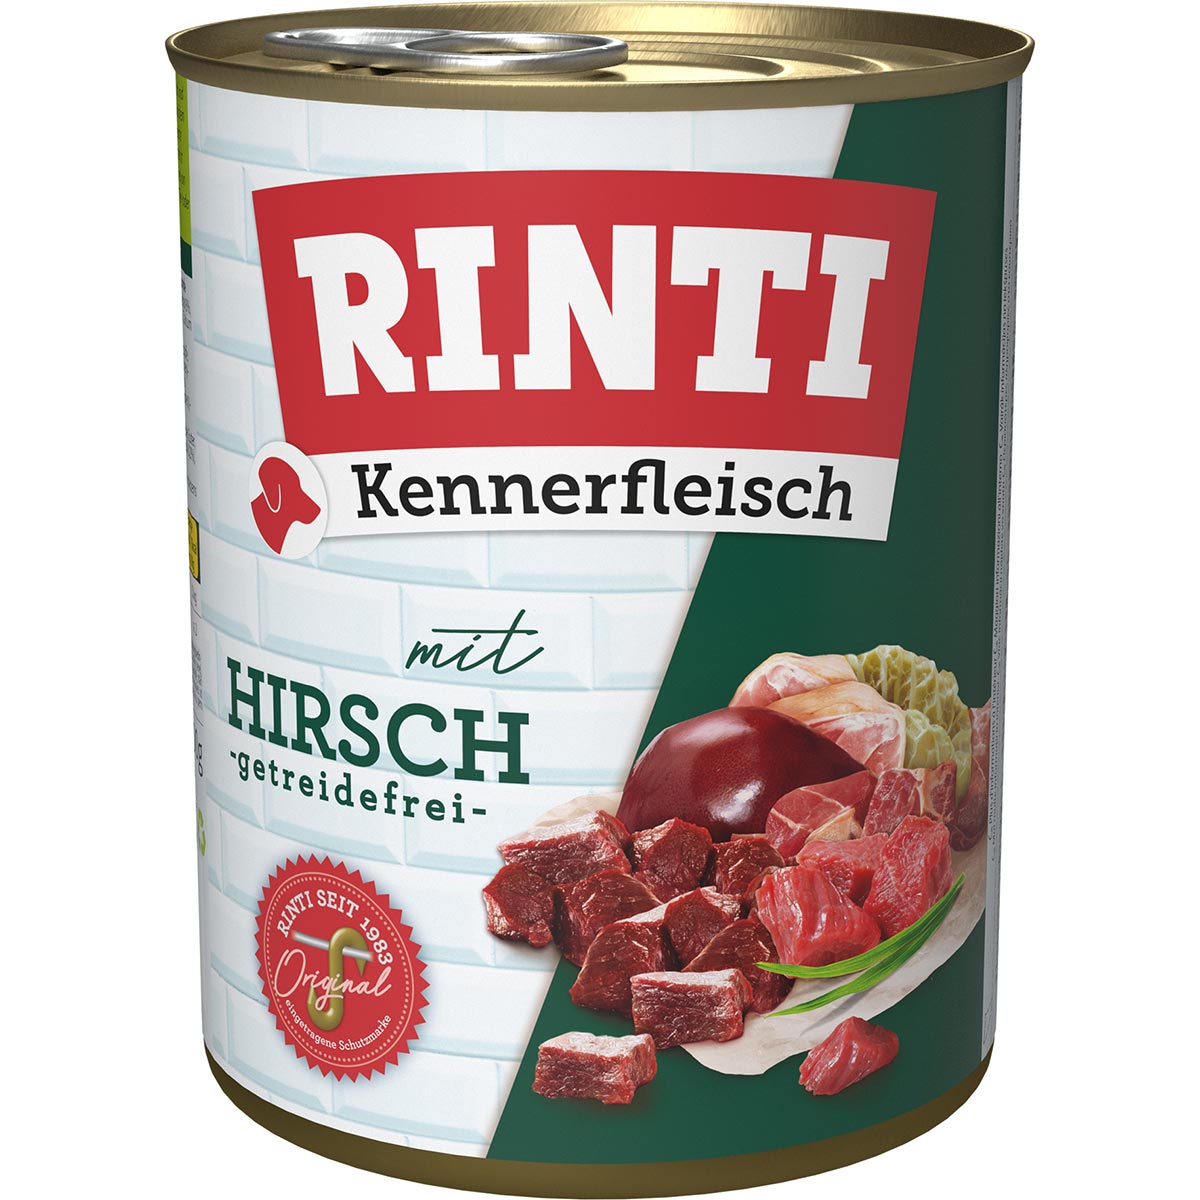 Rinti Kennerfleisch Hirsch 12x800g